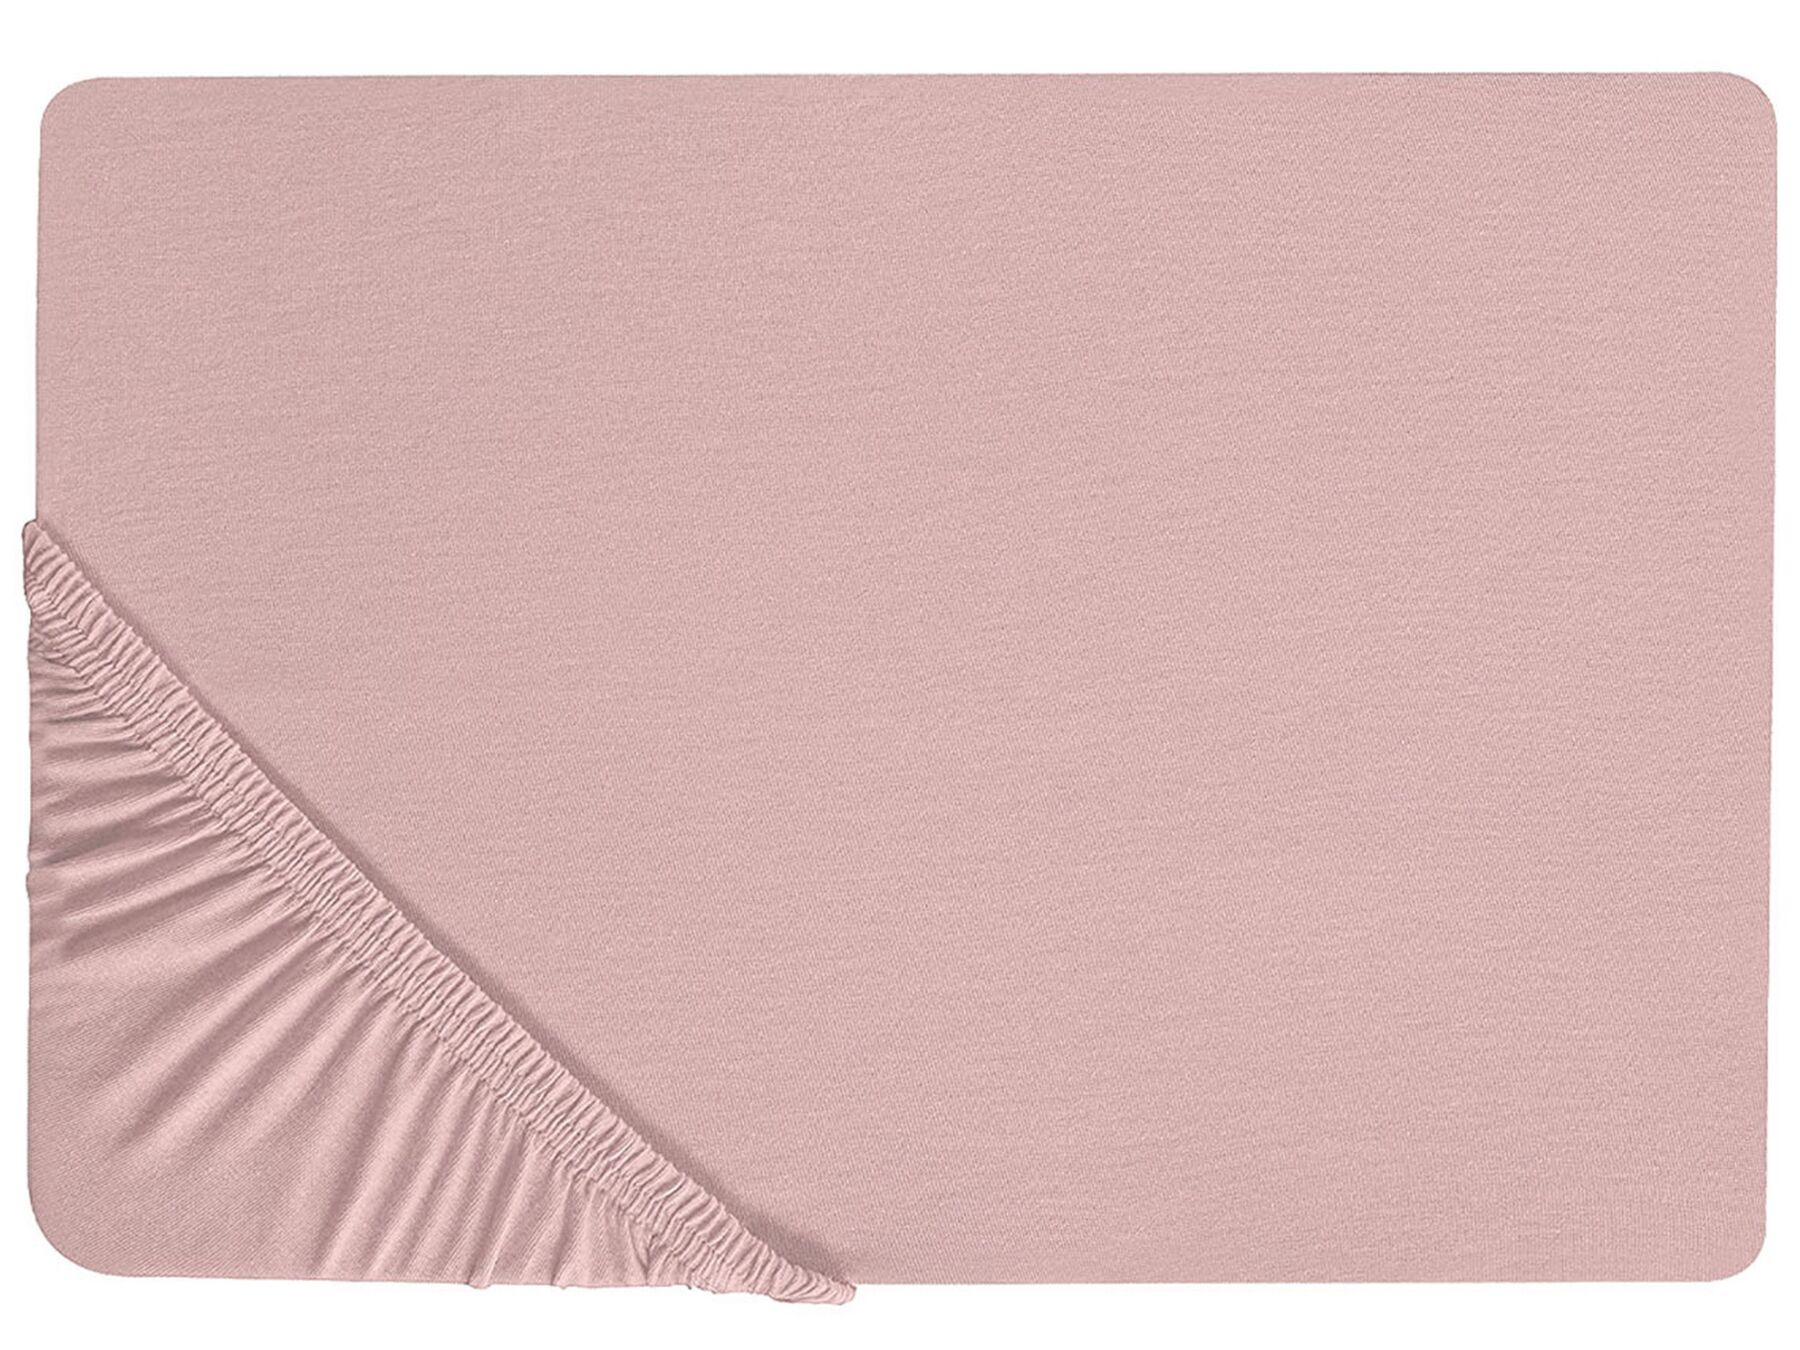 Hoeslaken katoen roze 200 x 200 cm HOFUF_815940